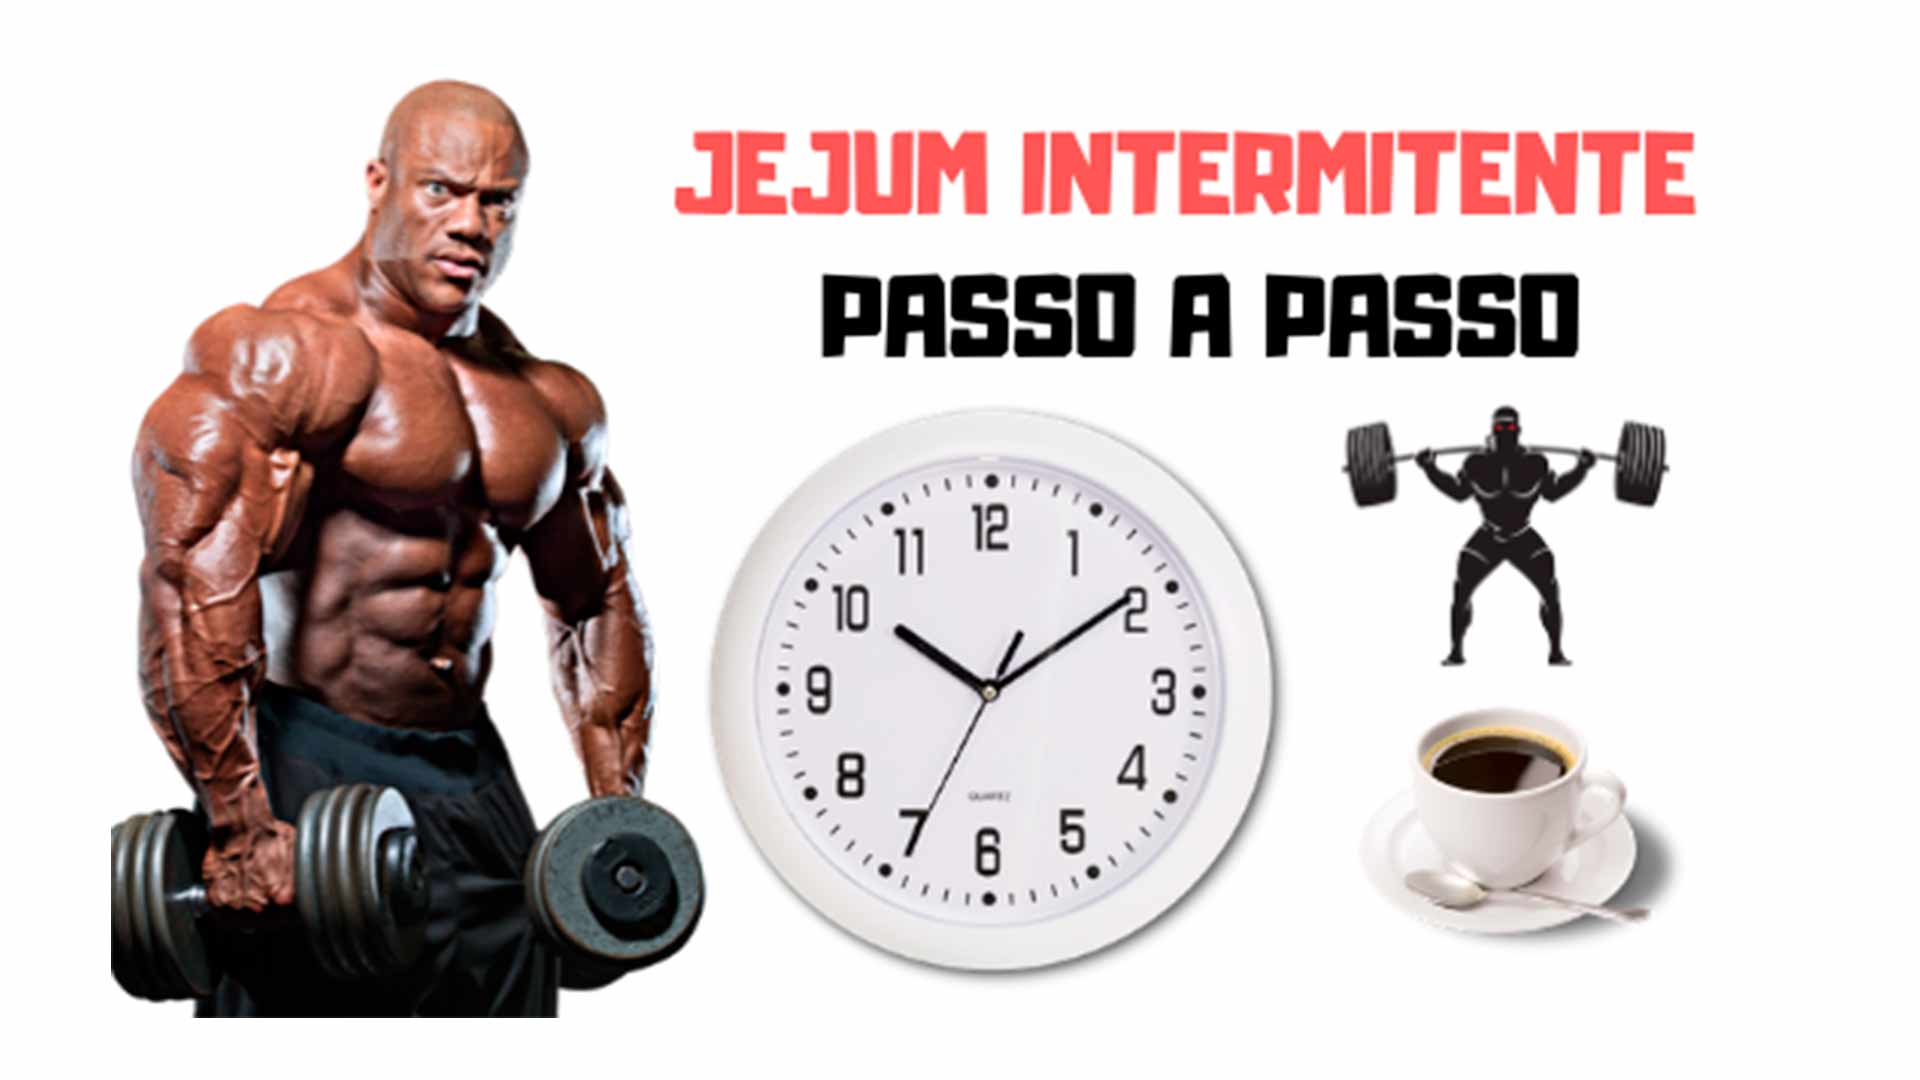 Jejum intermitente passo a passo como utilizar para emagrecer - Filipe Franco Consultoria Fitness Online.jpg